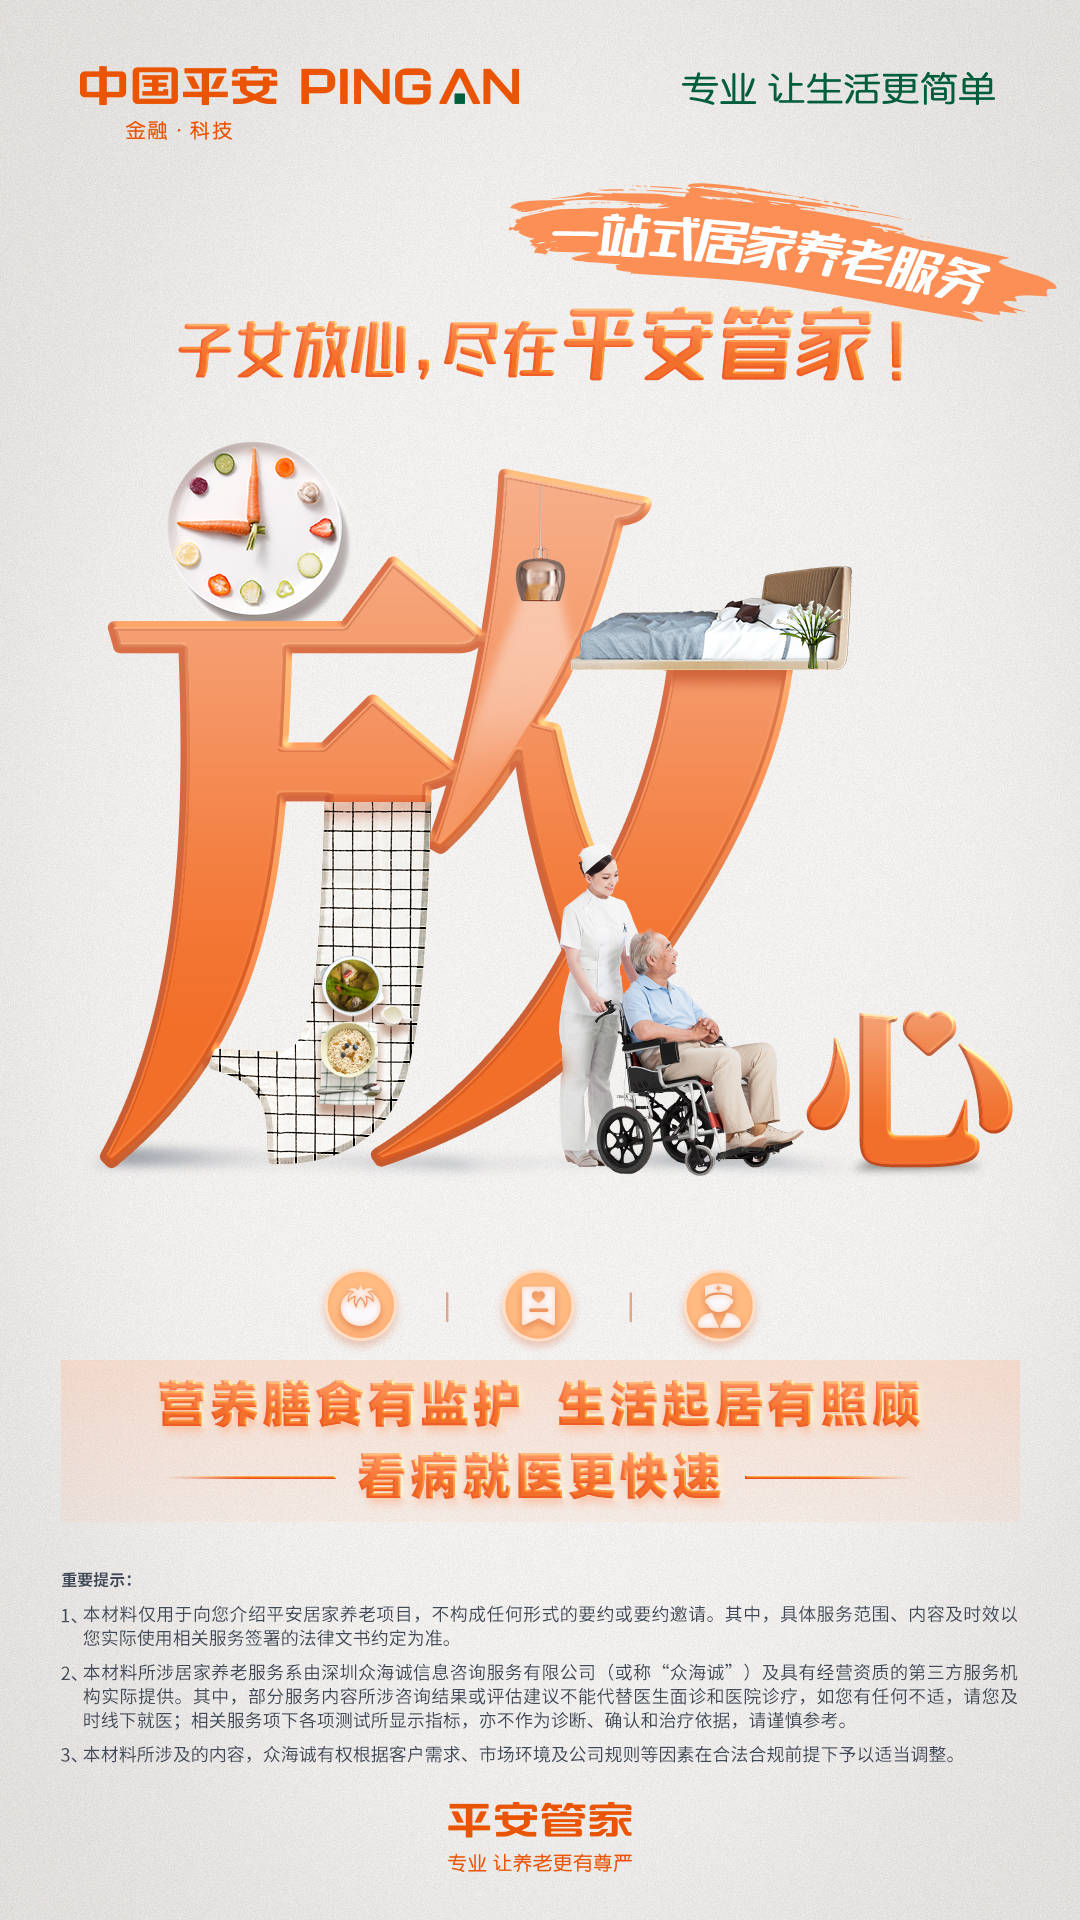 平安人寿内蒙古分公司发布居家养老服务品牌平安管家